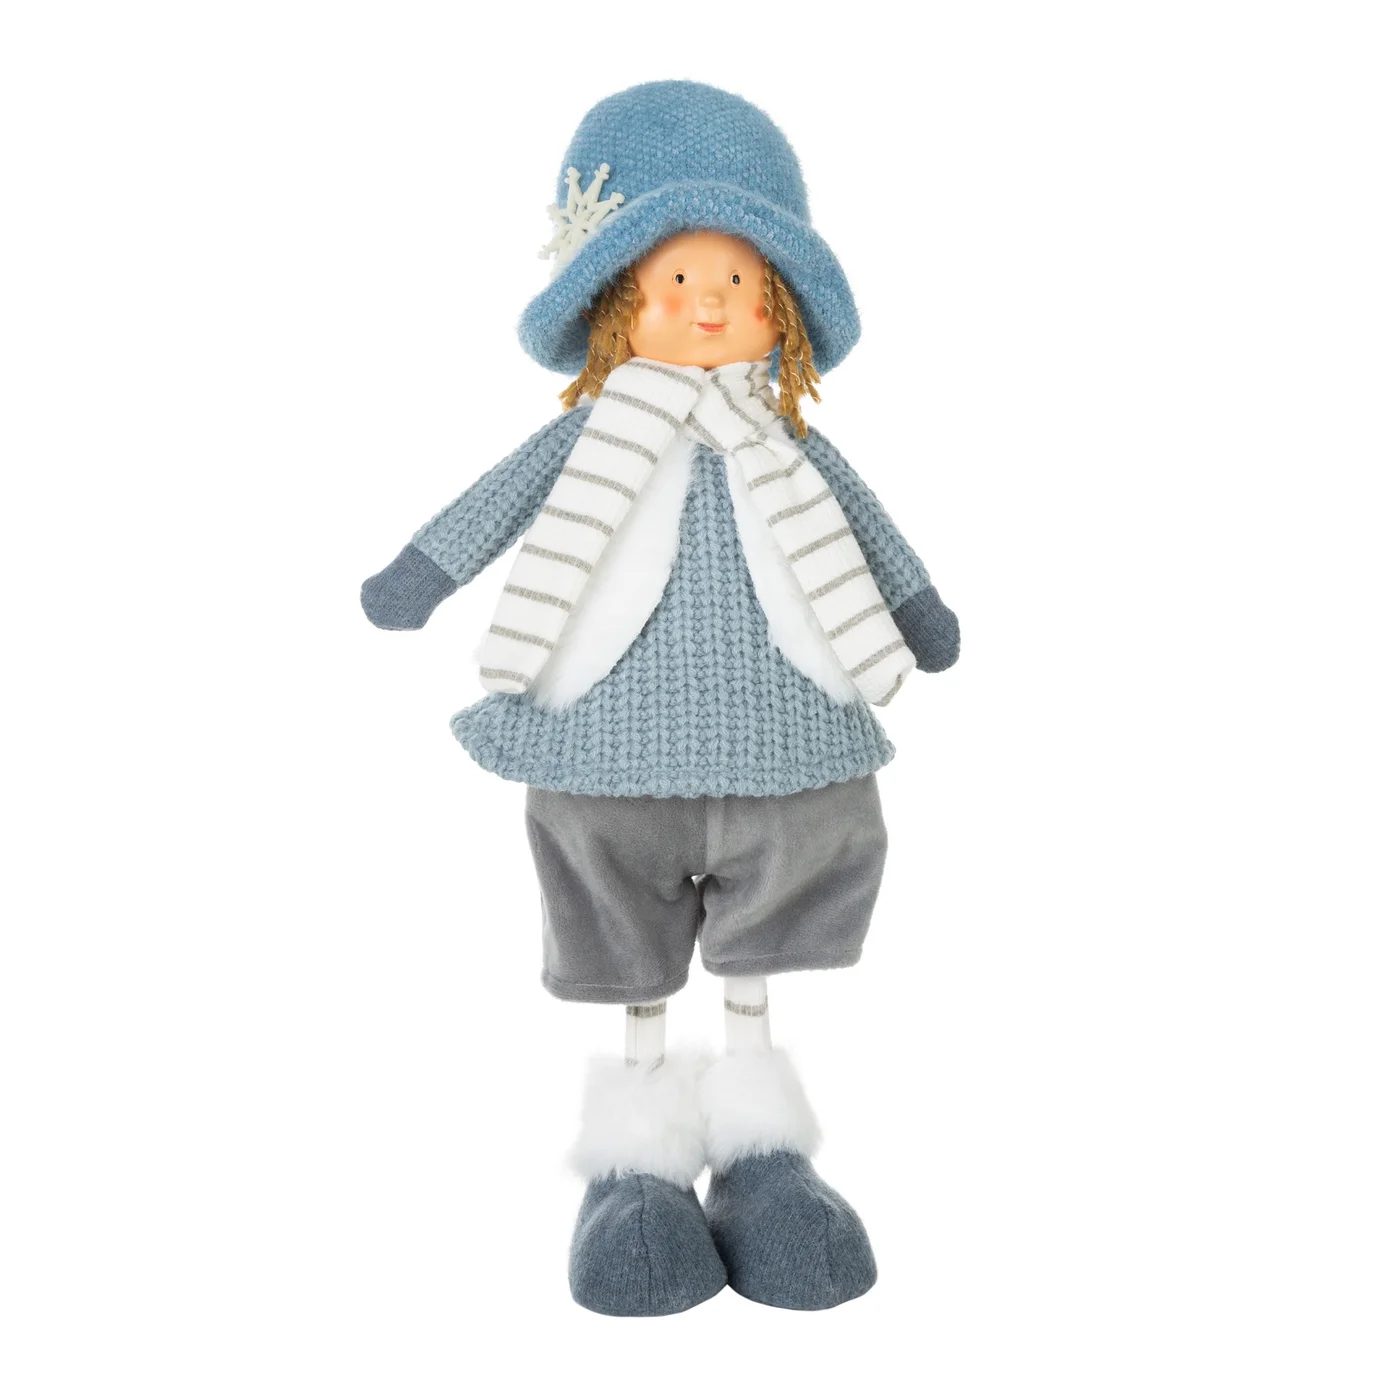 Figurka świąteczna DOLL lalka  w zimowym stroju z miękkich tkanin